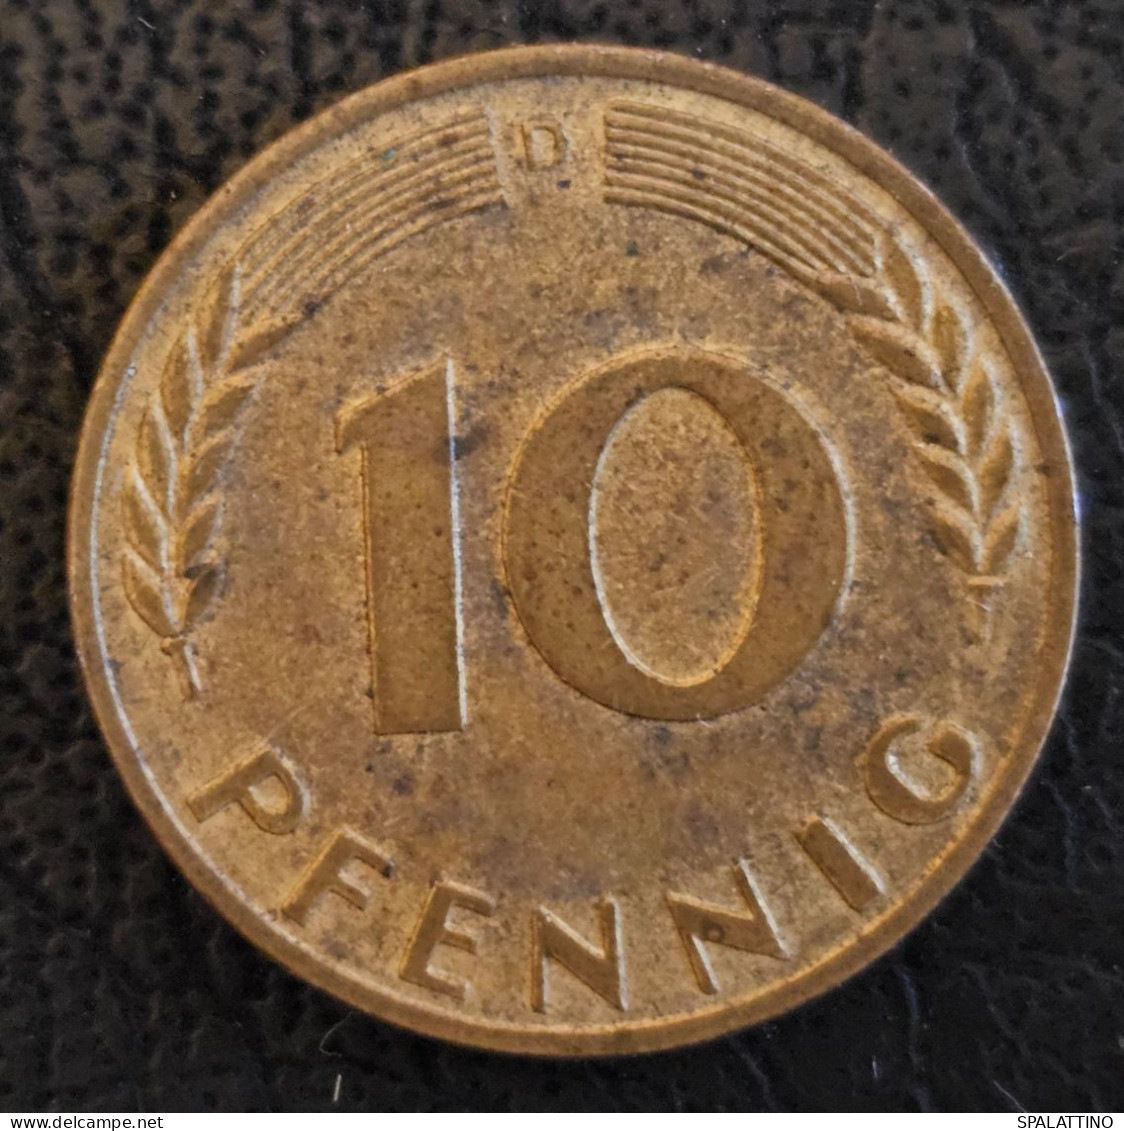 GERMANY- 10 PFENNIG 1949. D - 10 Pfennig